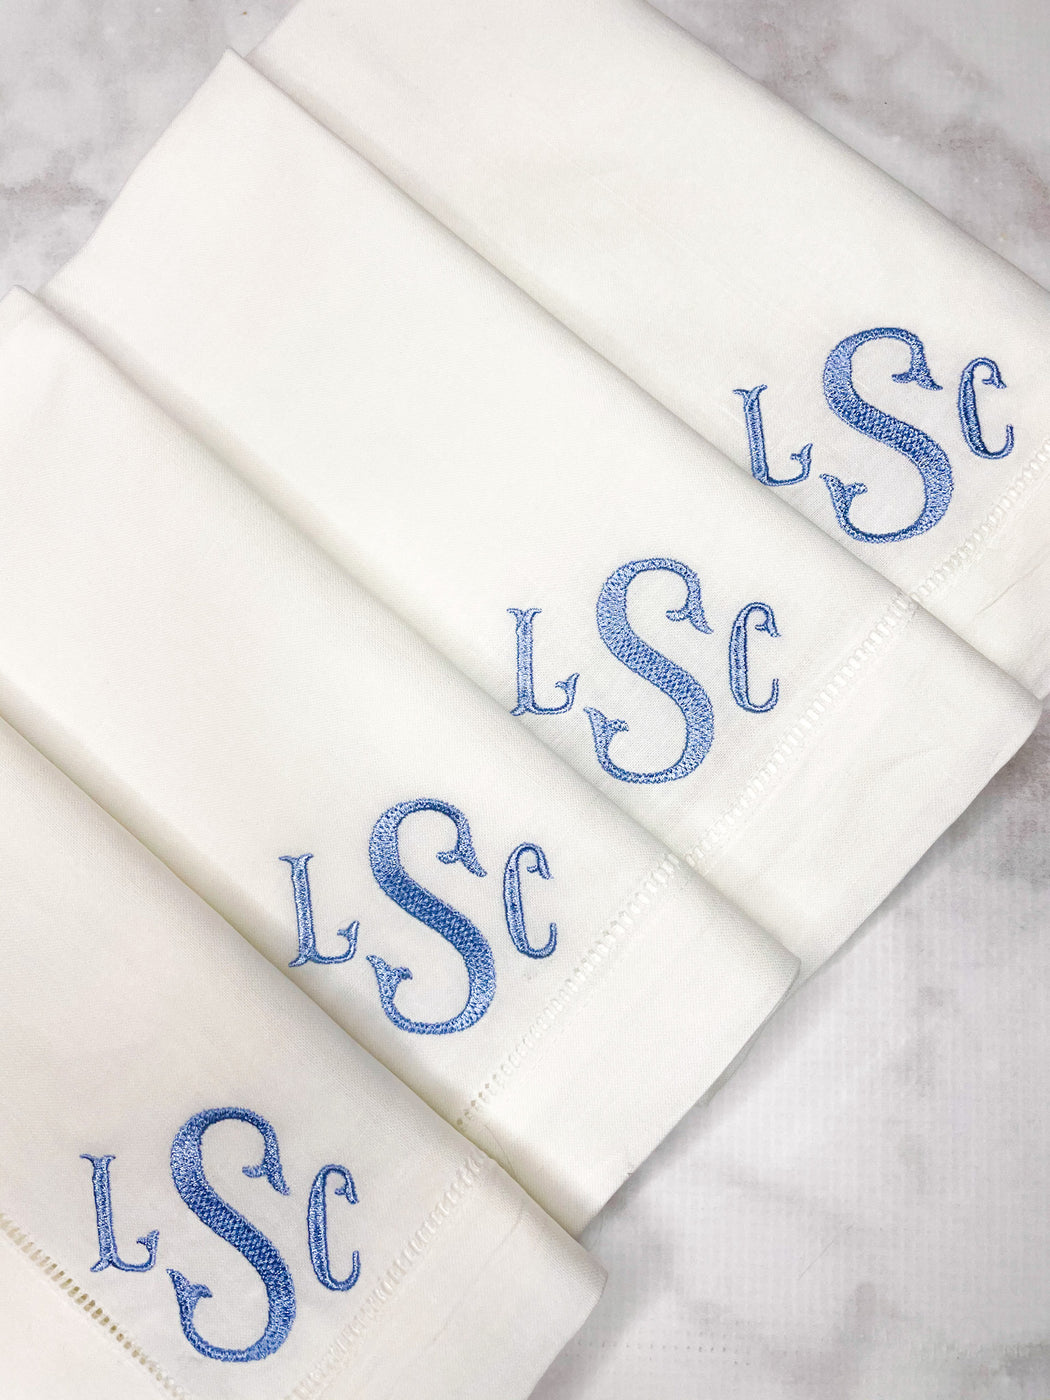 Linen/Cotton Blend Hemstitched Dinner Napkins - 3 Letter Monogram